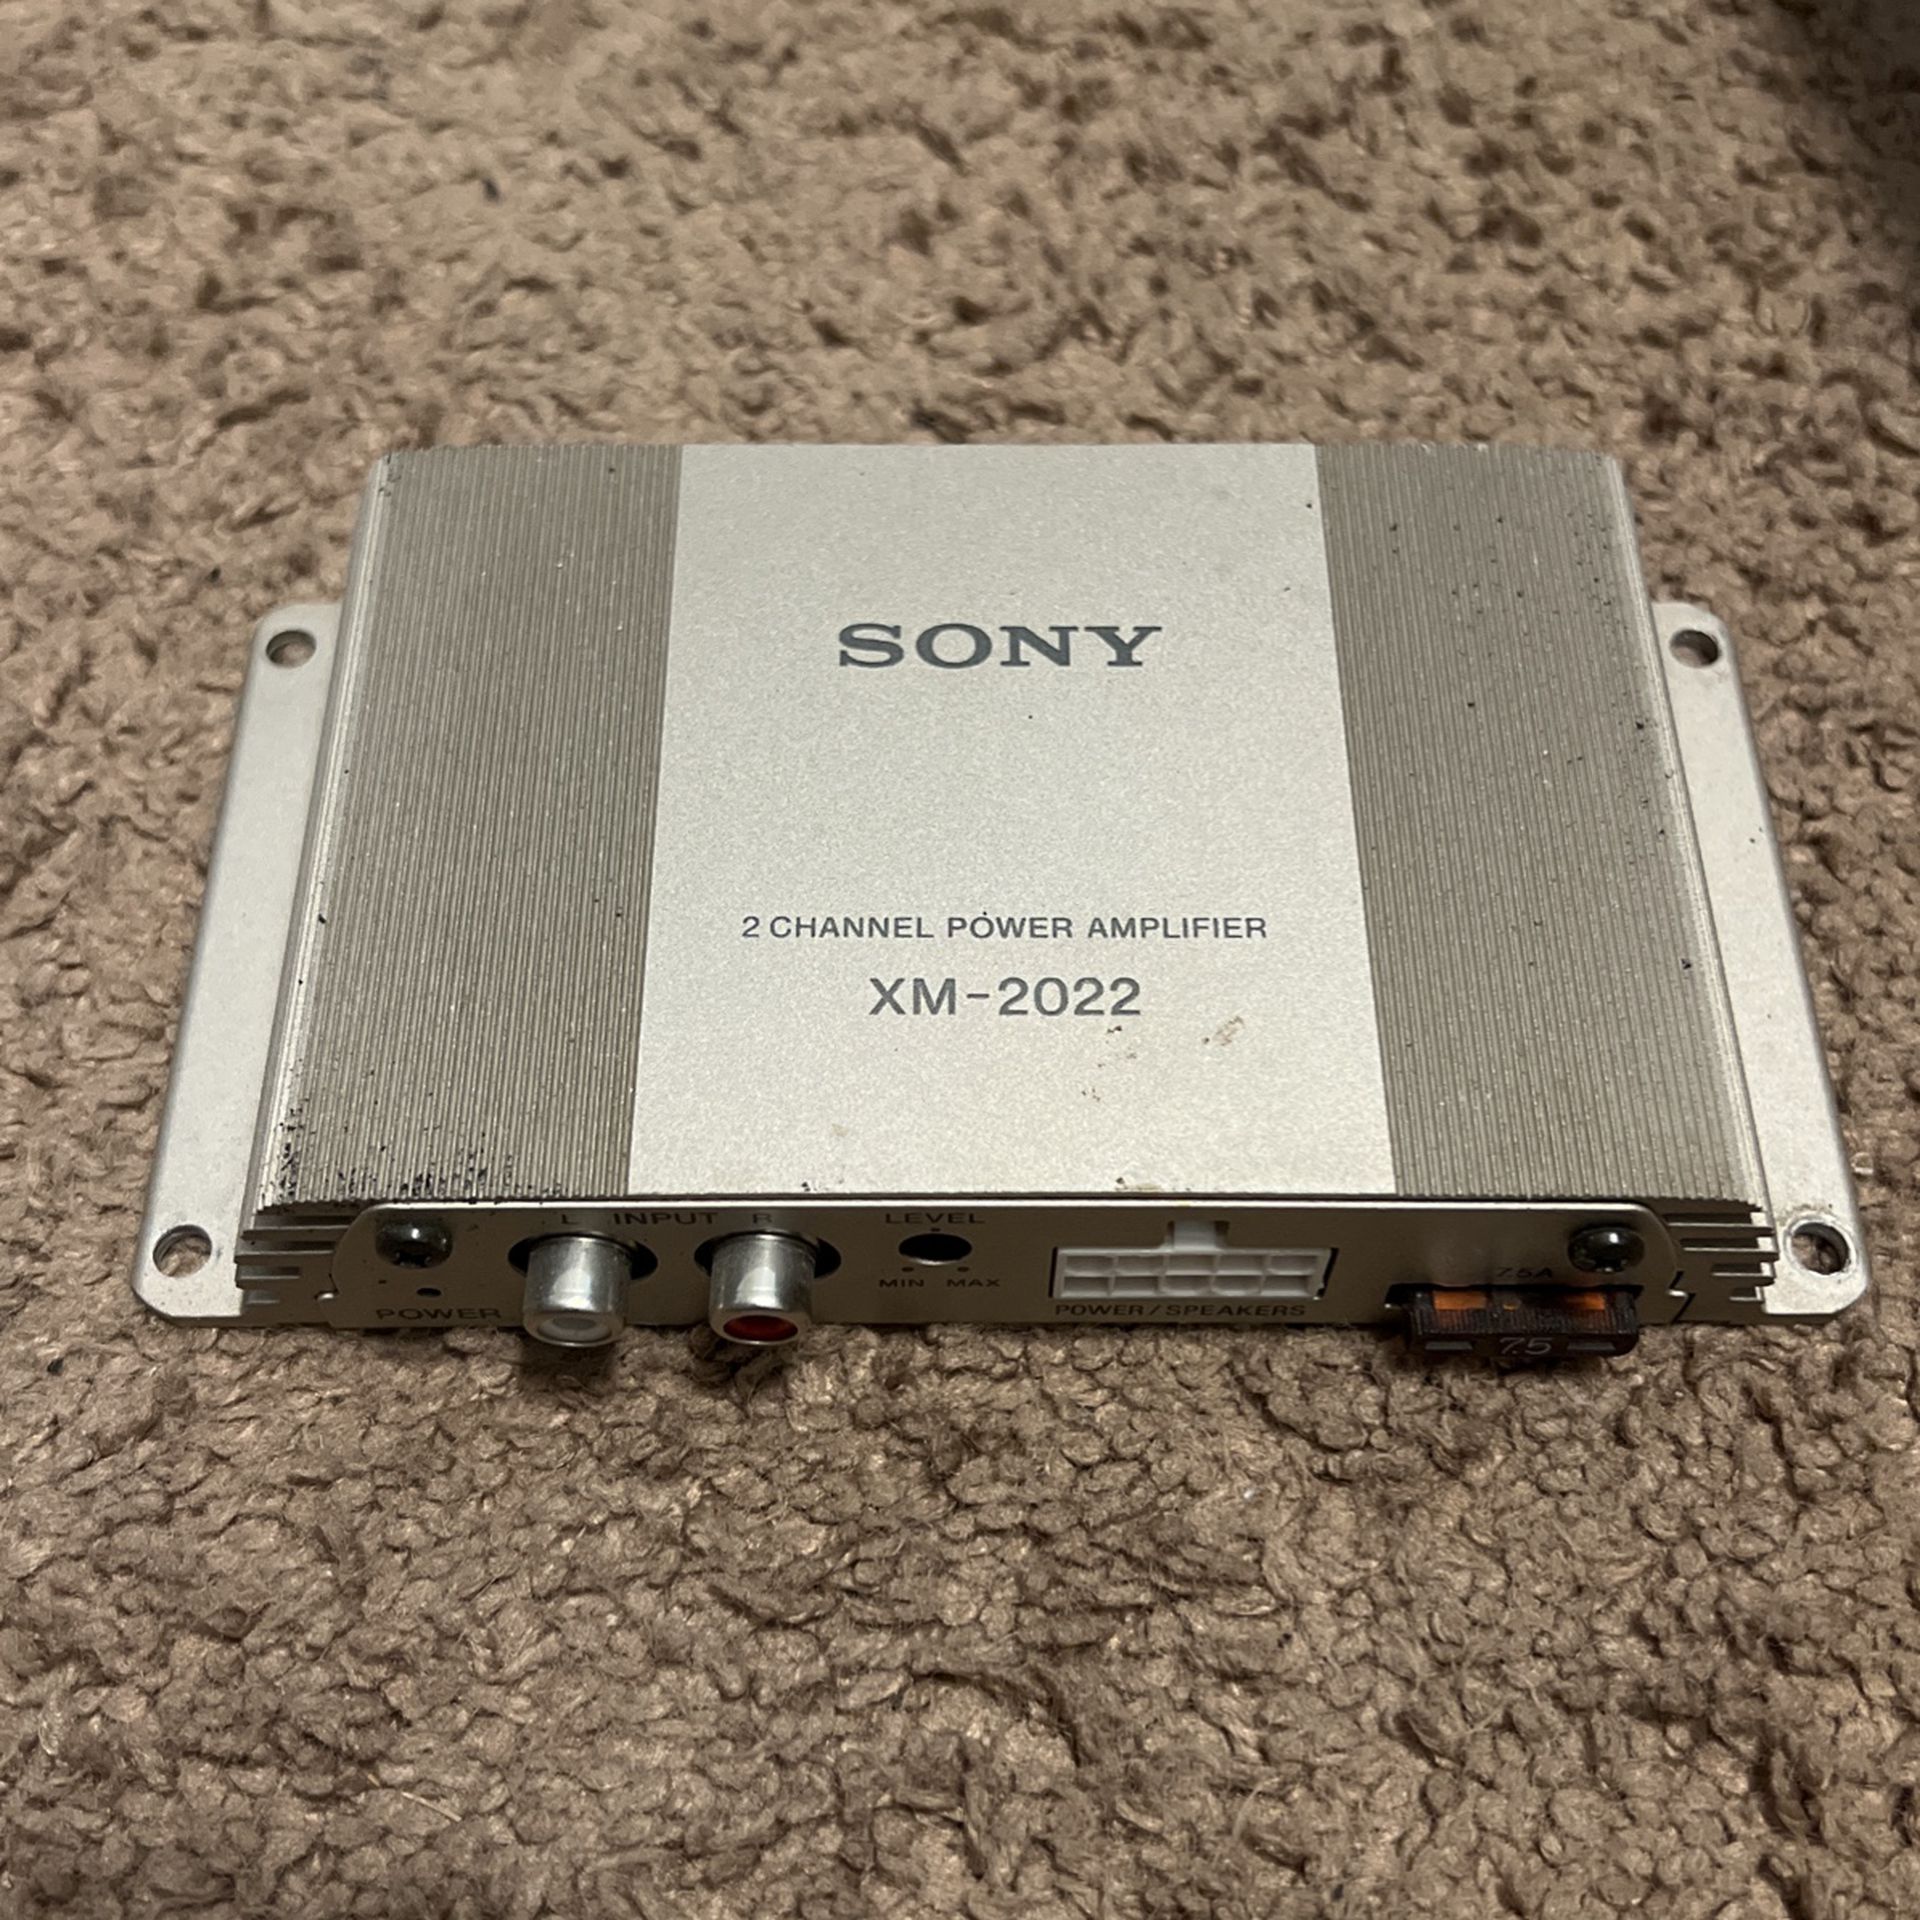 Sony 2 Channel Power Amplifier XM-2022